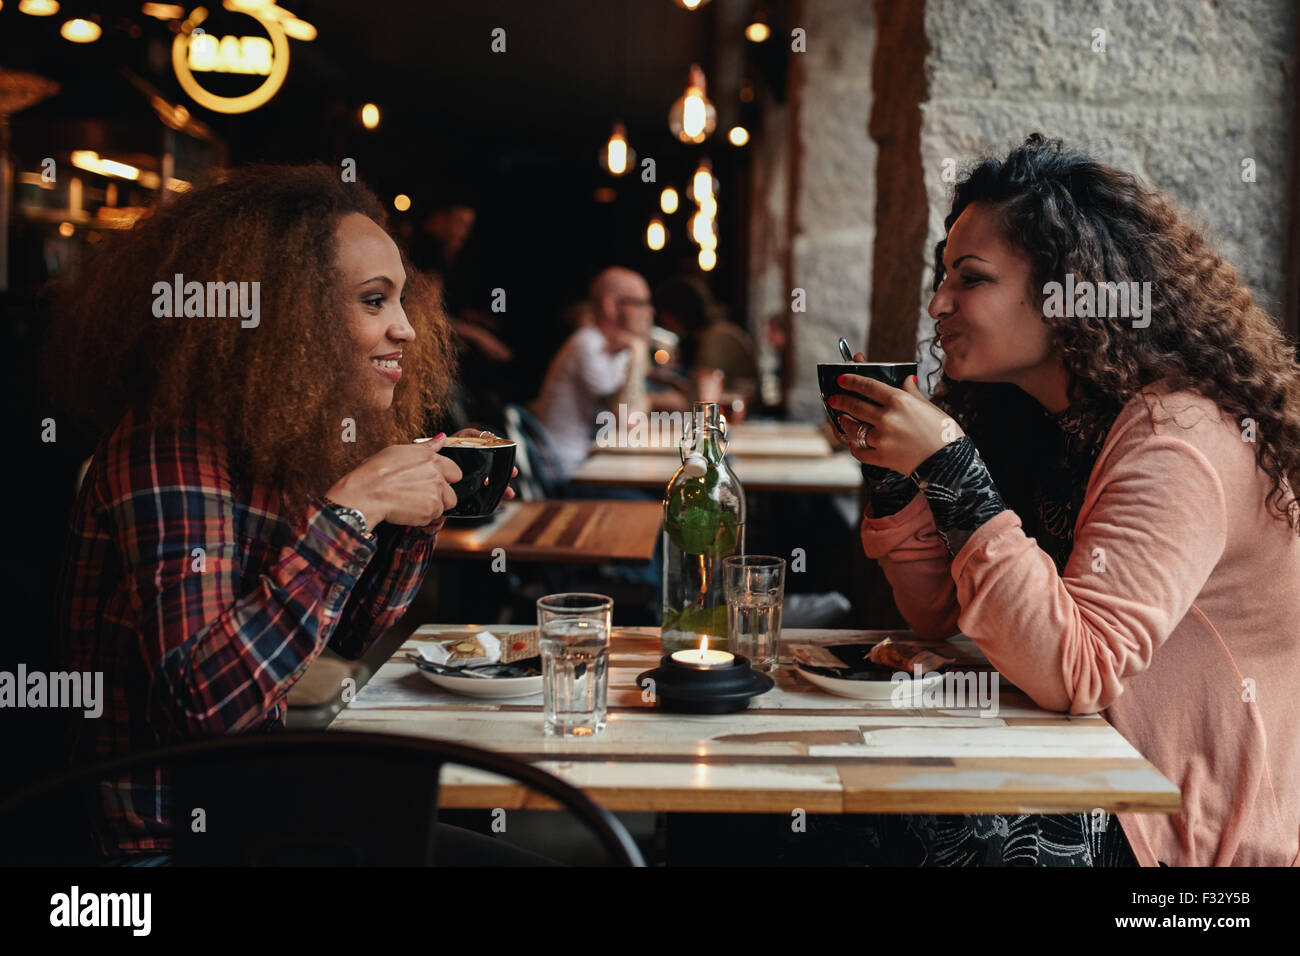 Seite Ansicht Porträt zweier junger Frauen reden und trinken Kaffee in einem Café. Freundinnen in einem Restaurant. Stockfoto